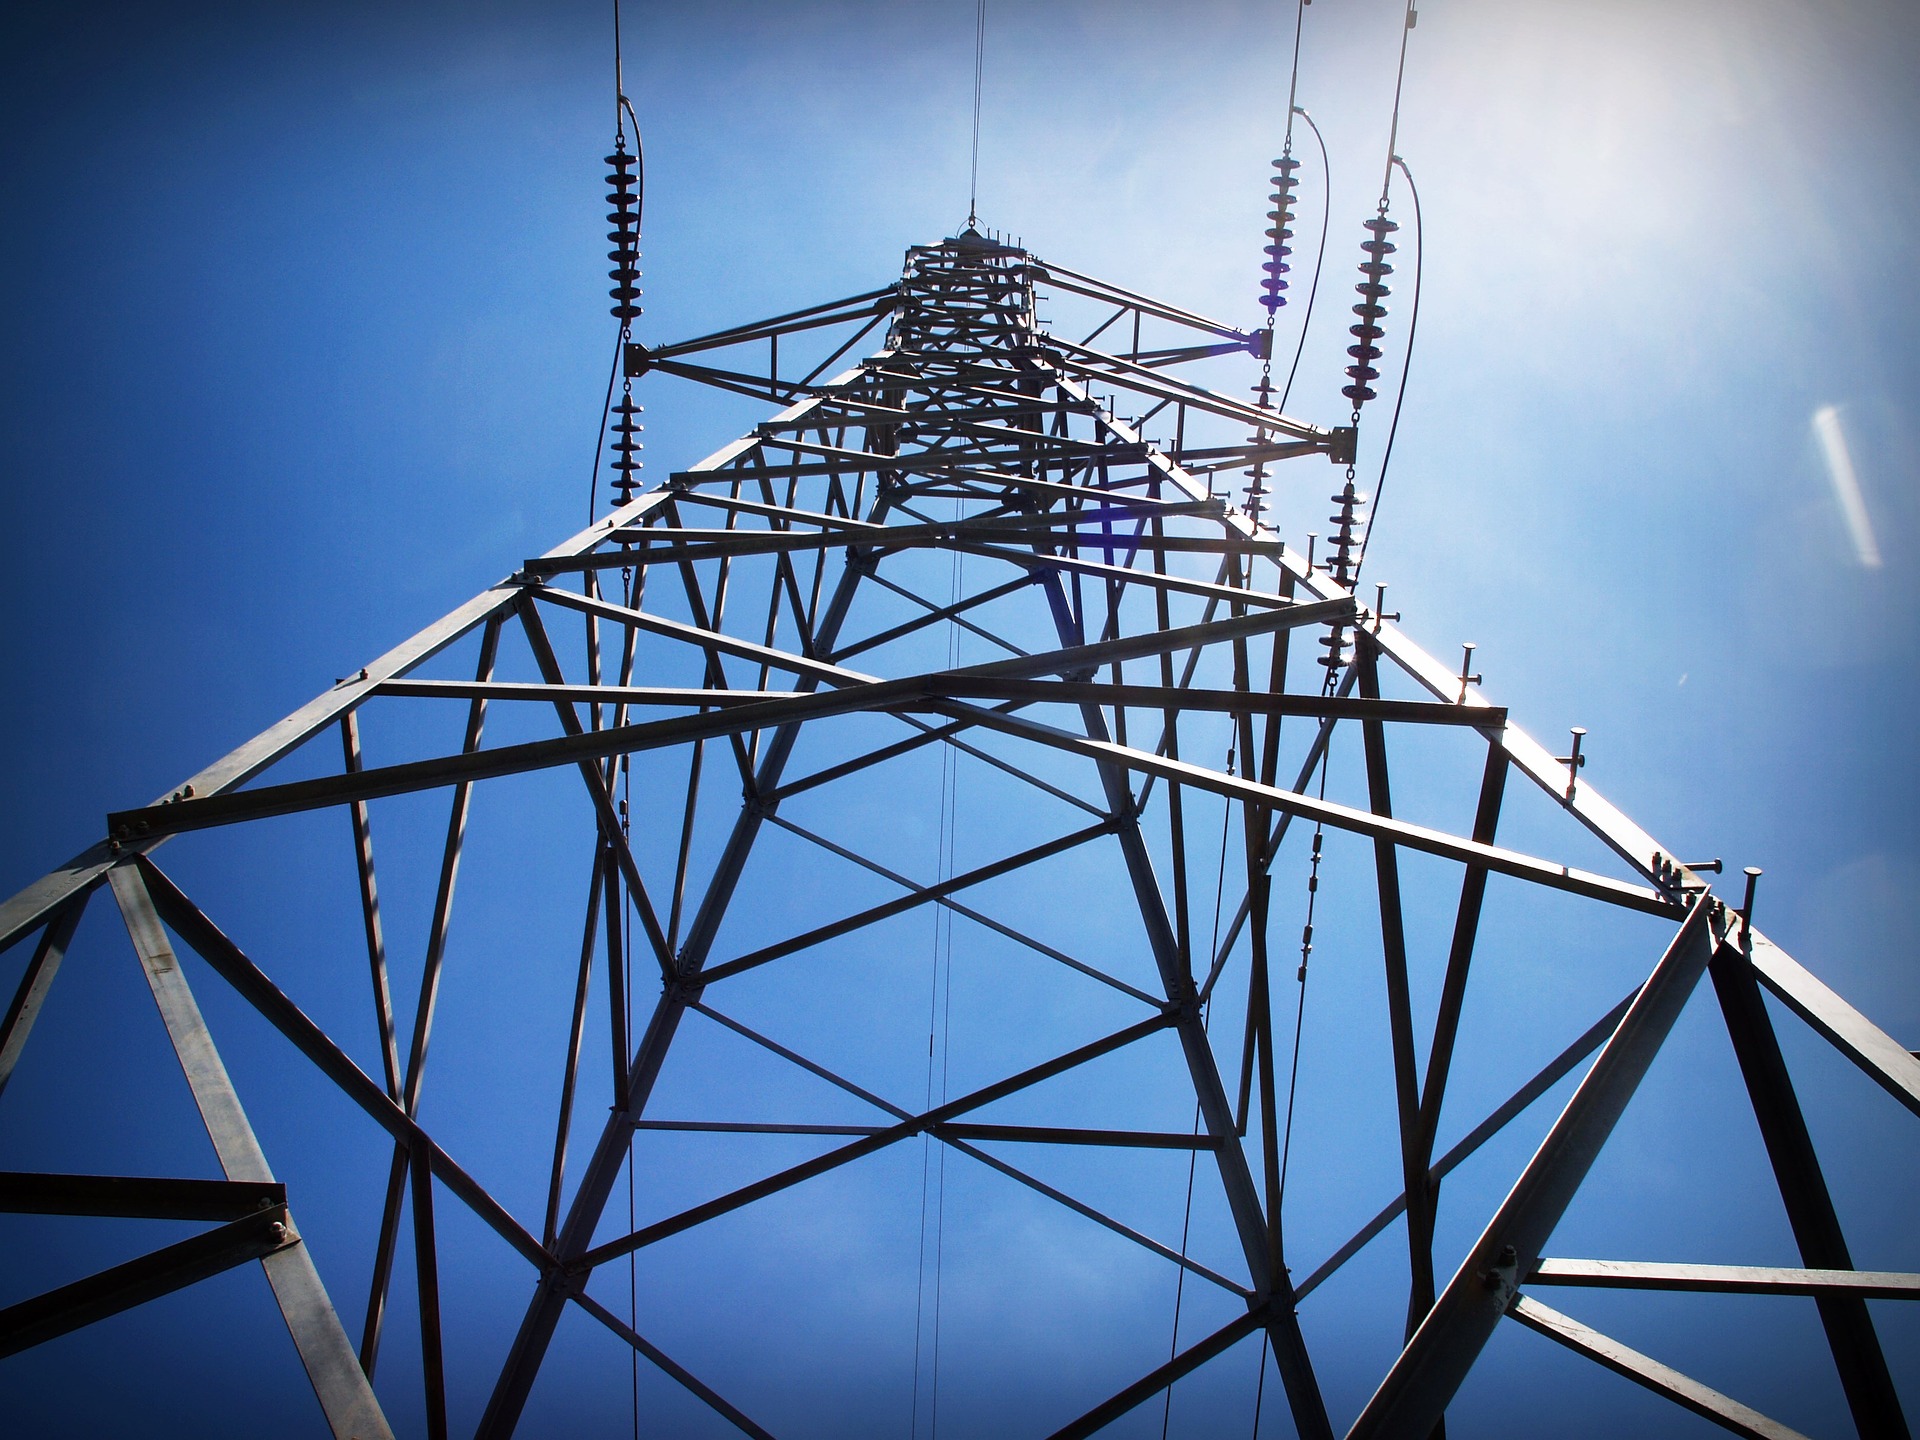 Empresas pedem ação coordenada para conter ataques ao setor elétrico. Na imagem: foto de baixo pra cima de rede de transmissão de energia